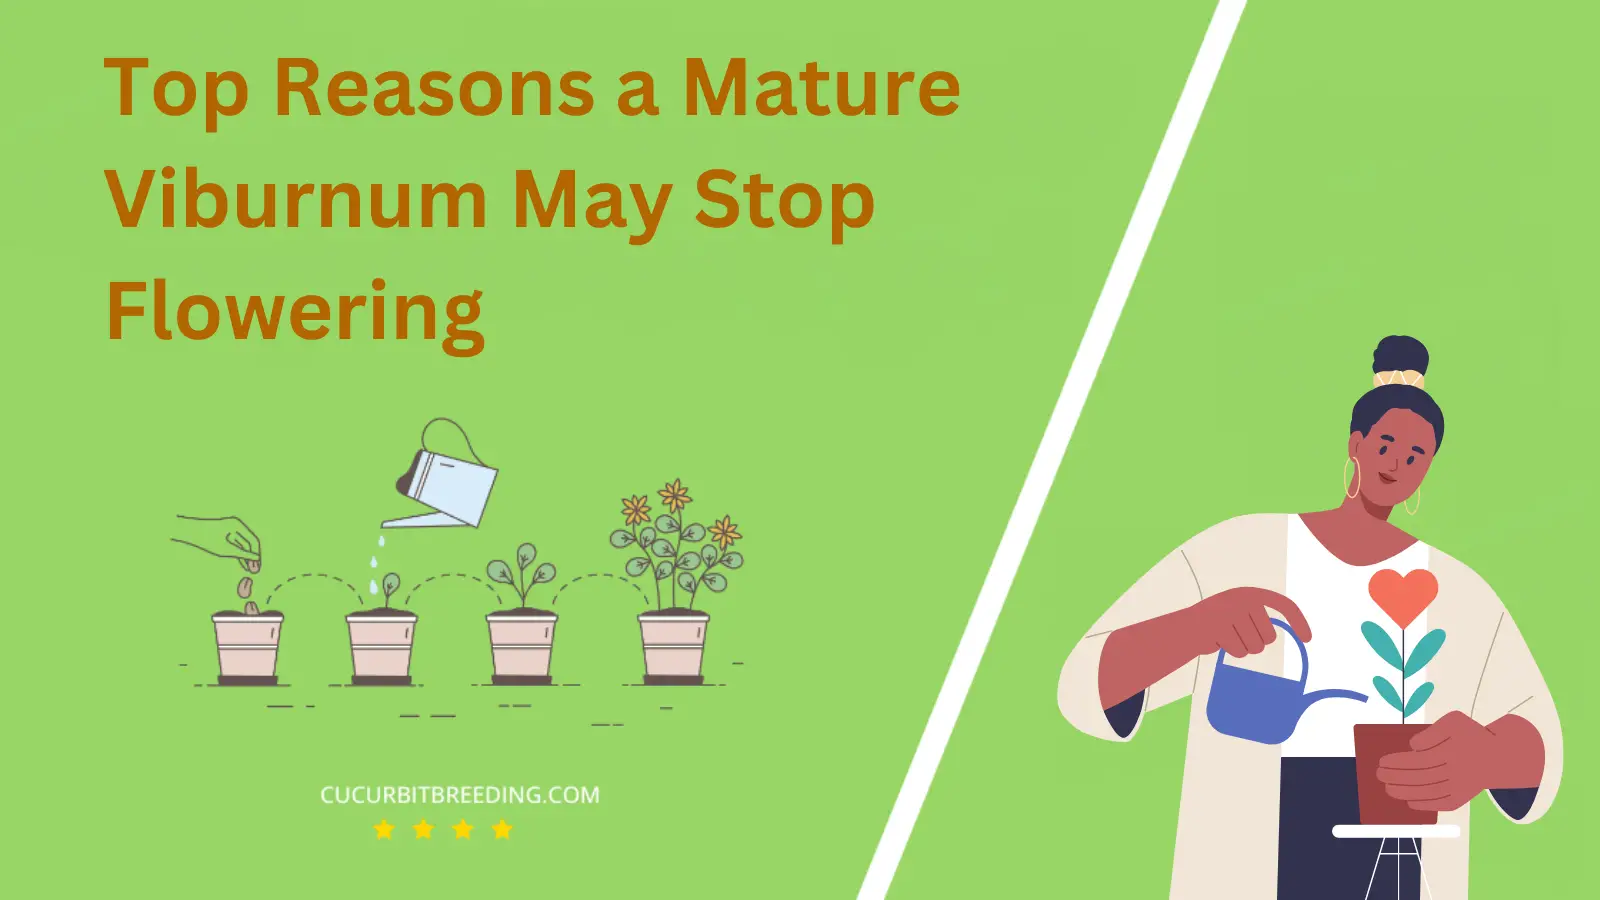 Top Reasons a Mature Viburnum May Stop Flowering